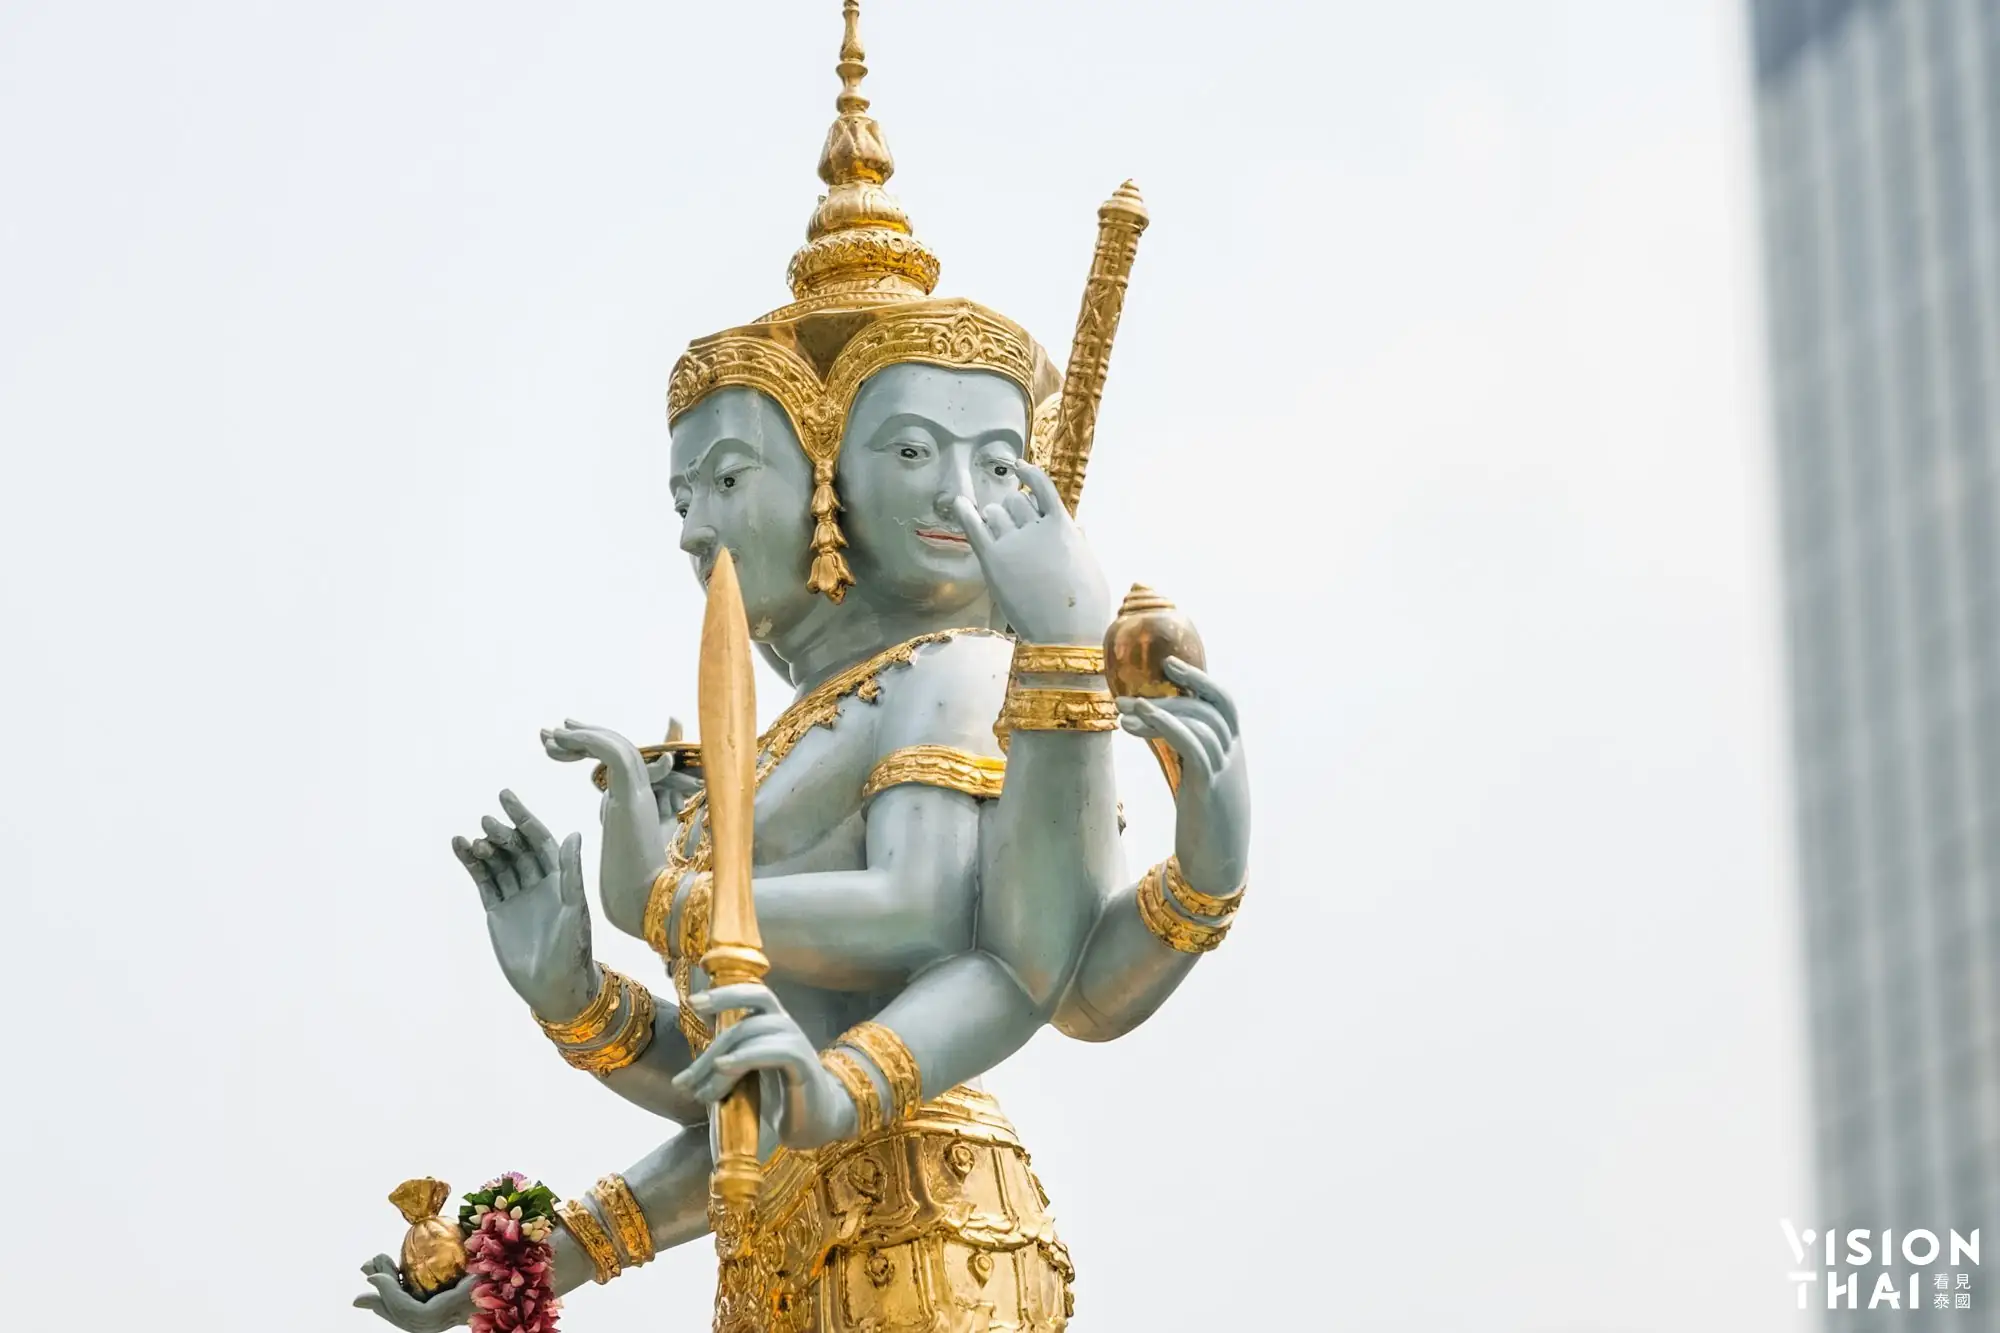 曼谷Jatulokabal Shrine為新恭迎到蓋頌生活購物商城的神像（VISION THAI 看見泰國）